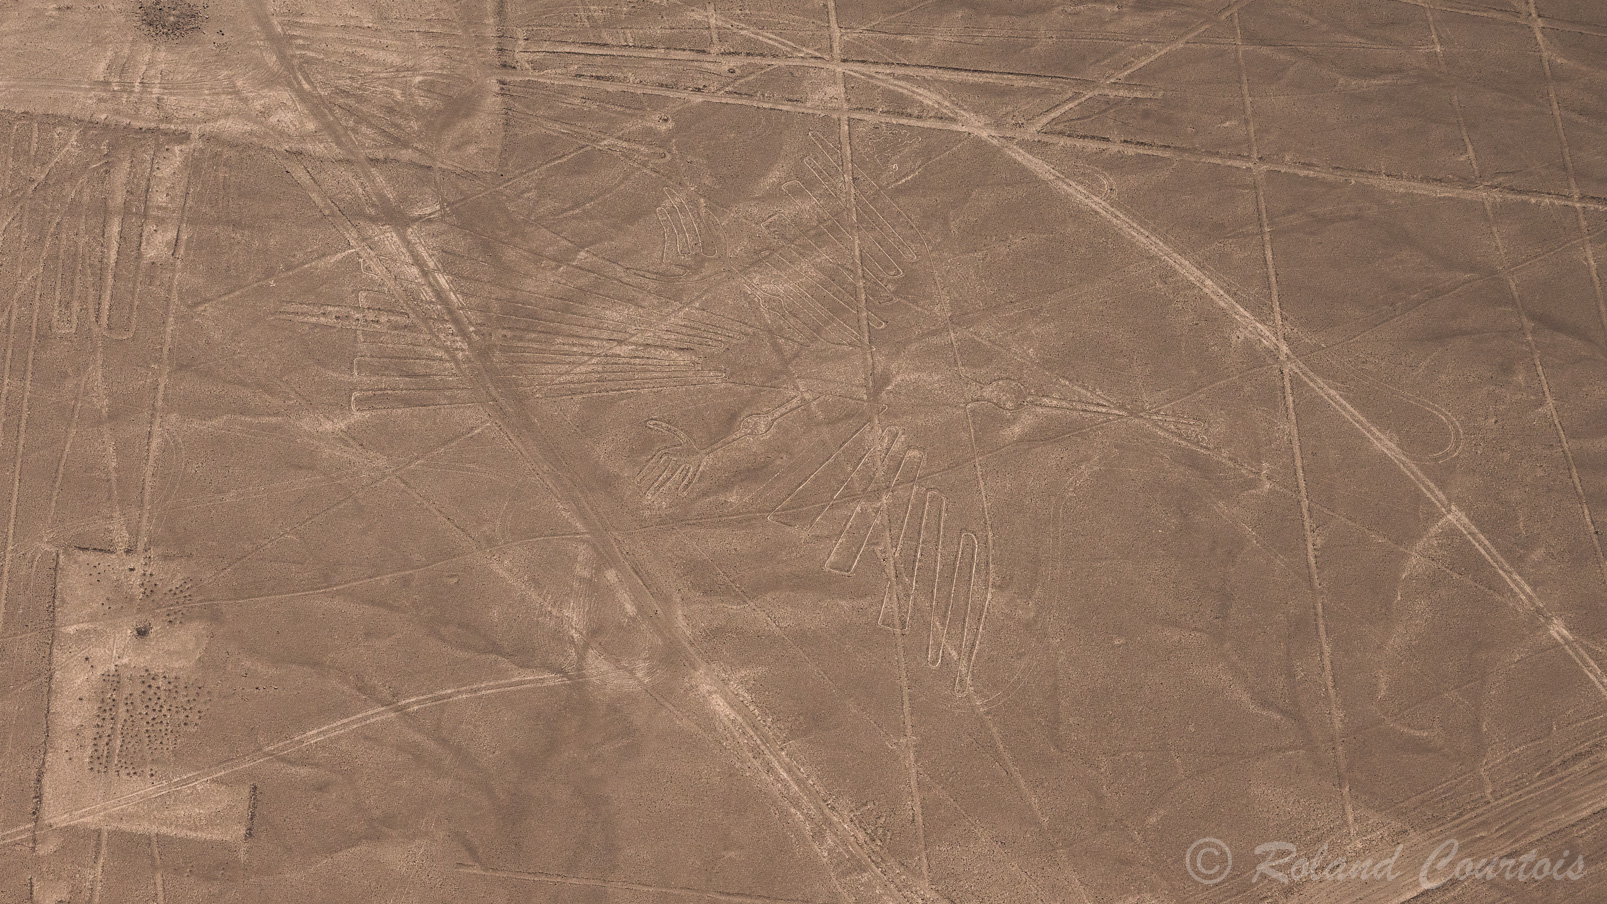 Découverte des lignes de Nazca. Faucon